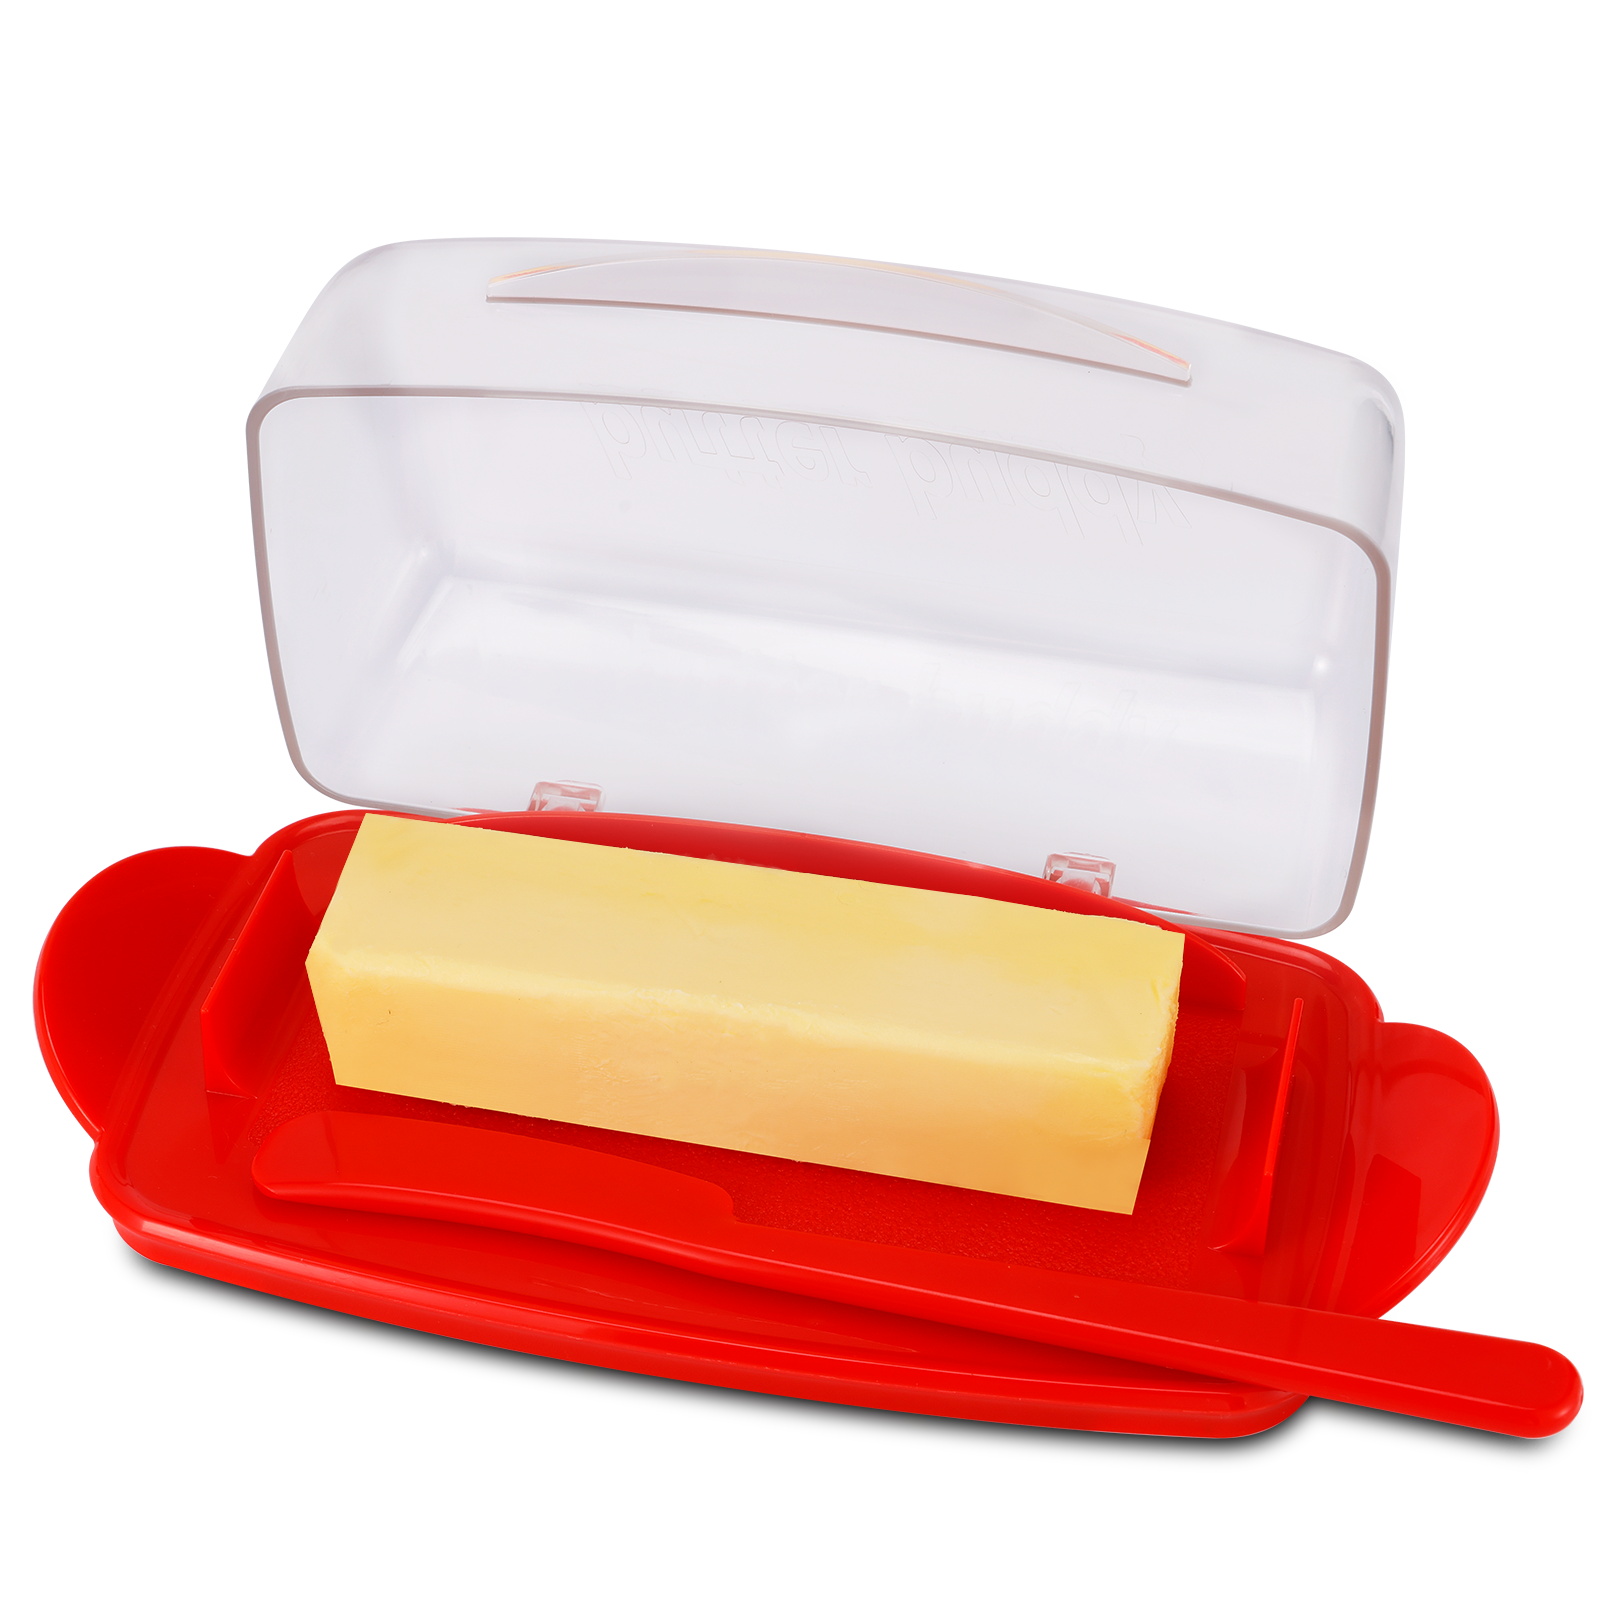 Danie z masłem z pokryciem blatu, trwały plastikowy pojemnik na masło z nożem, uroczy uchwyt i klapka